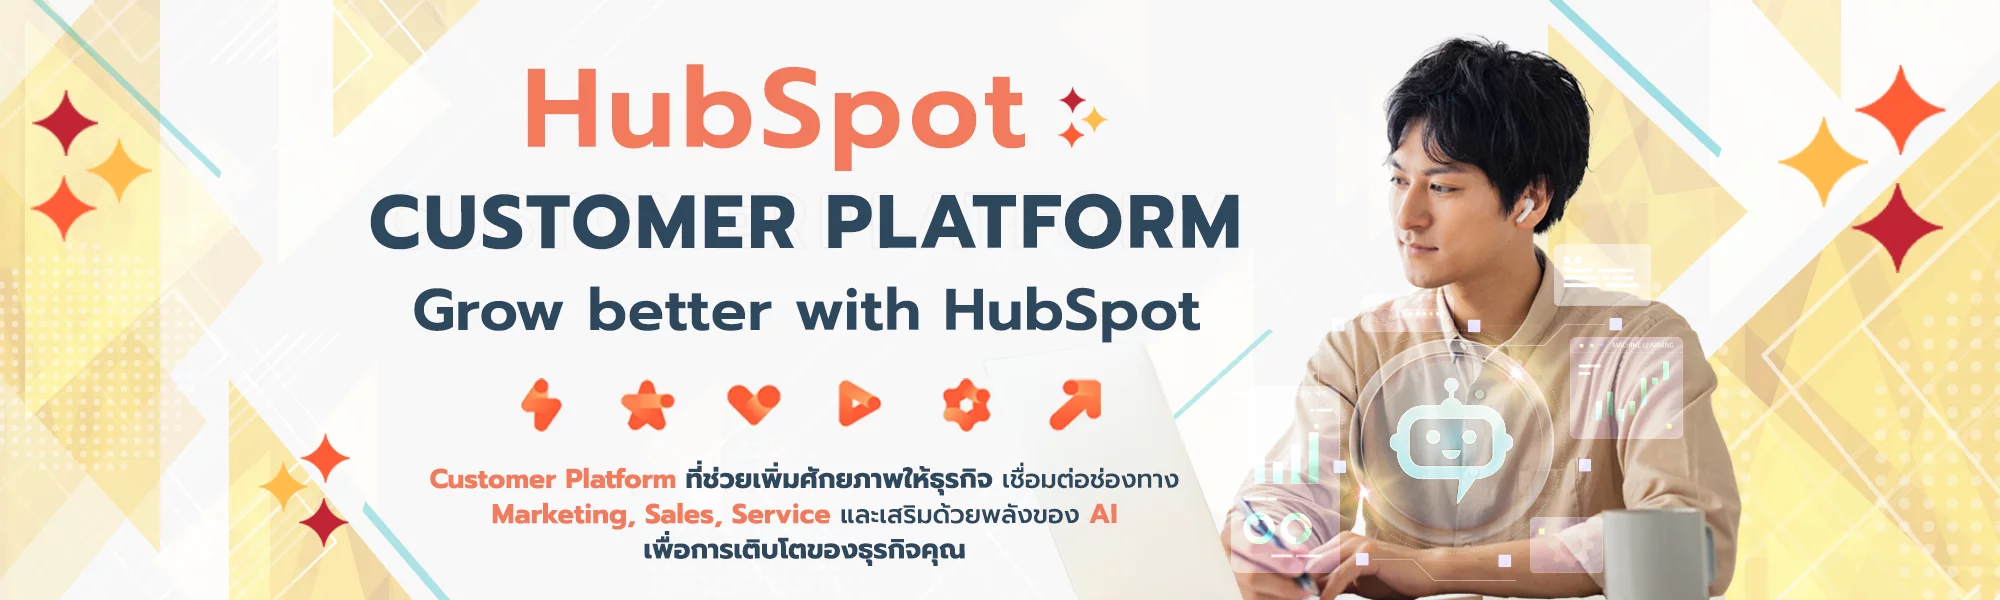 HubSpot Customer Platform